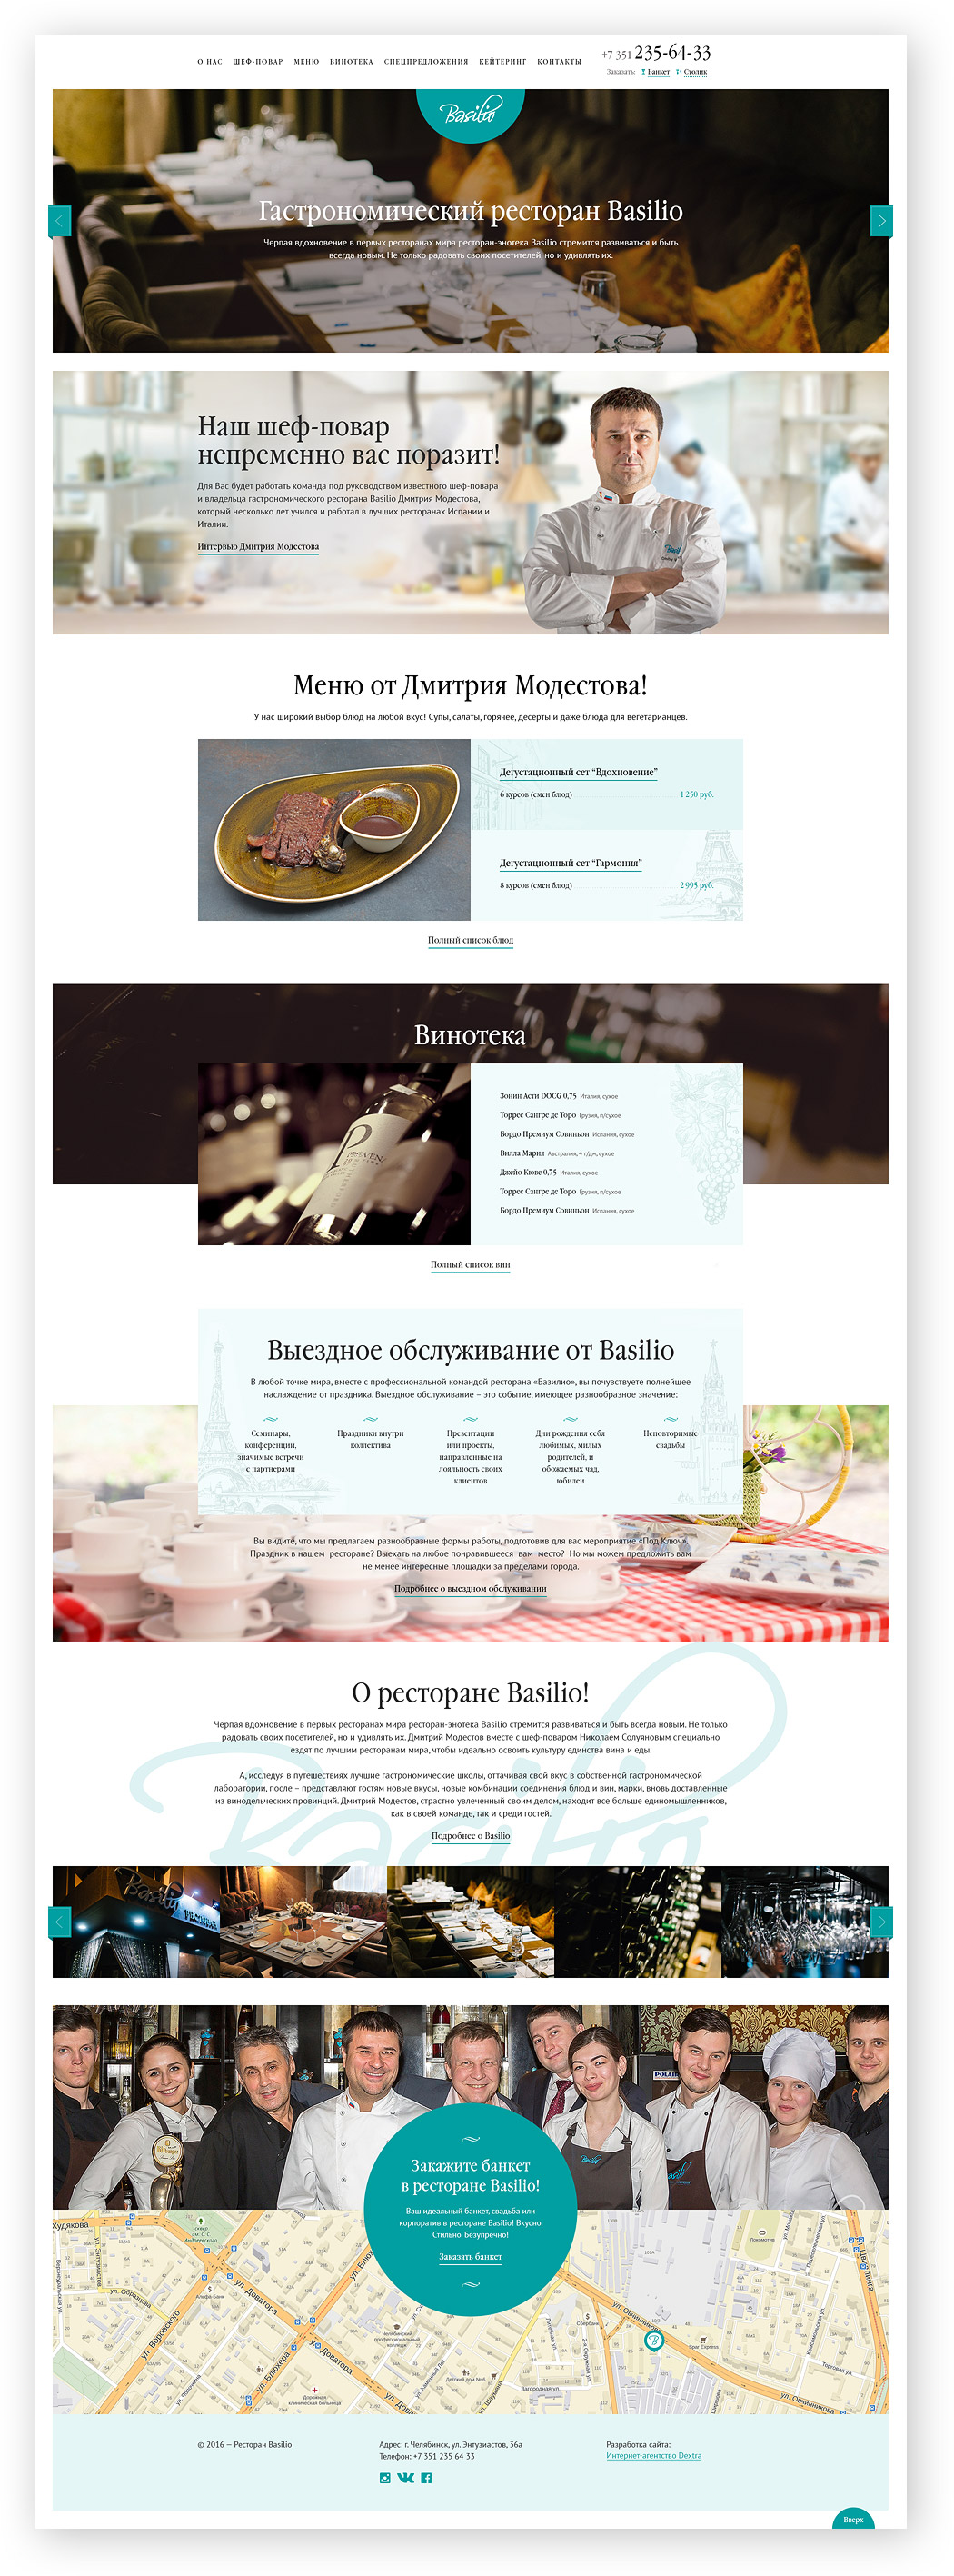 Сайт гастрономического ресторана «Базилио» - страница в деталях